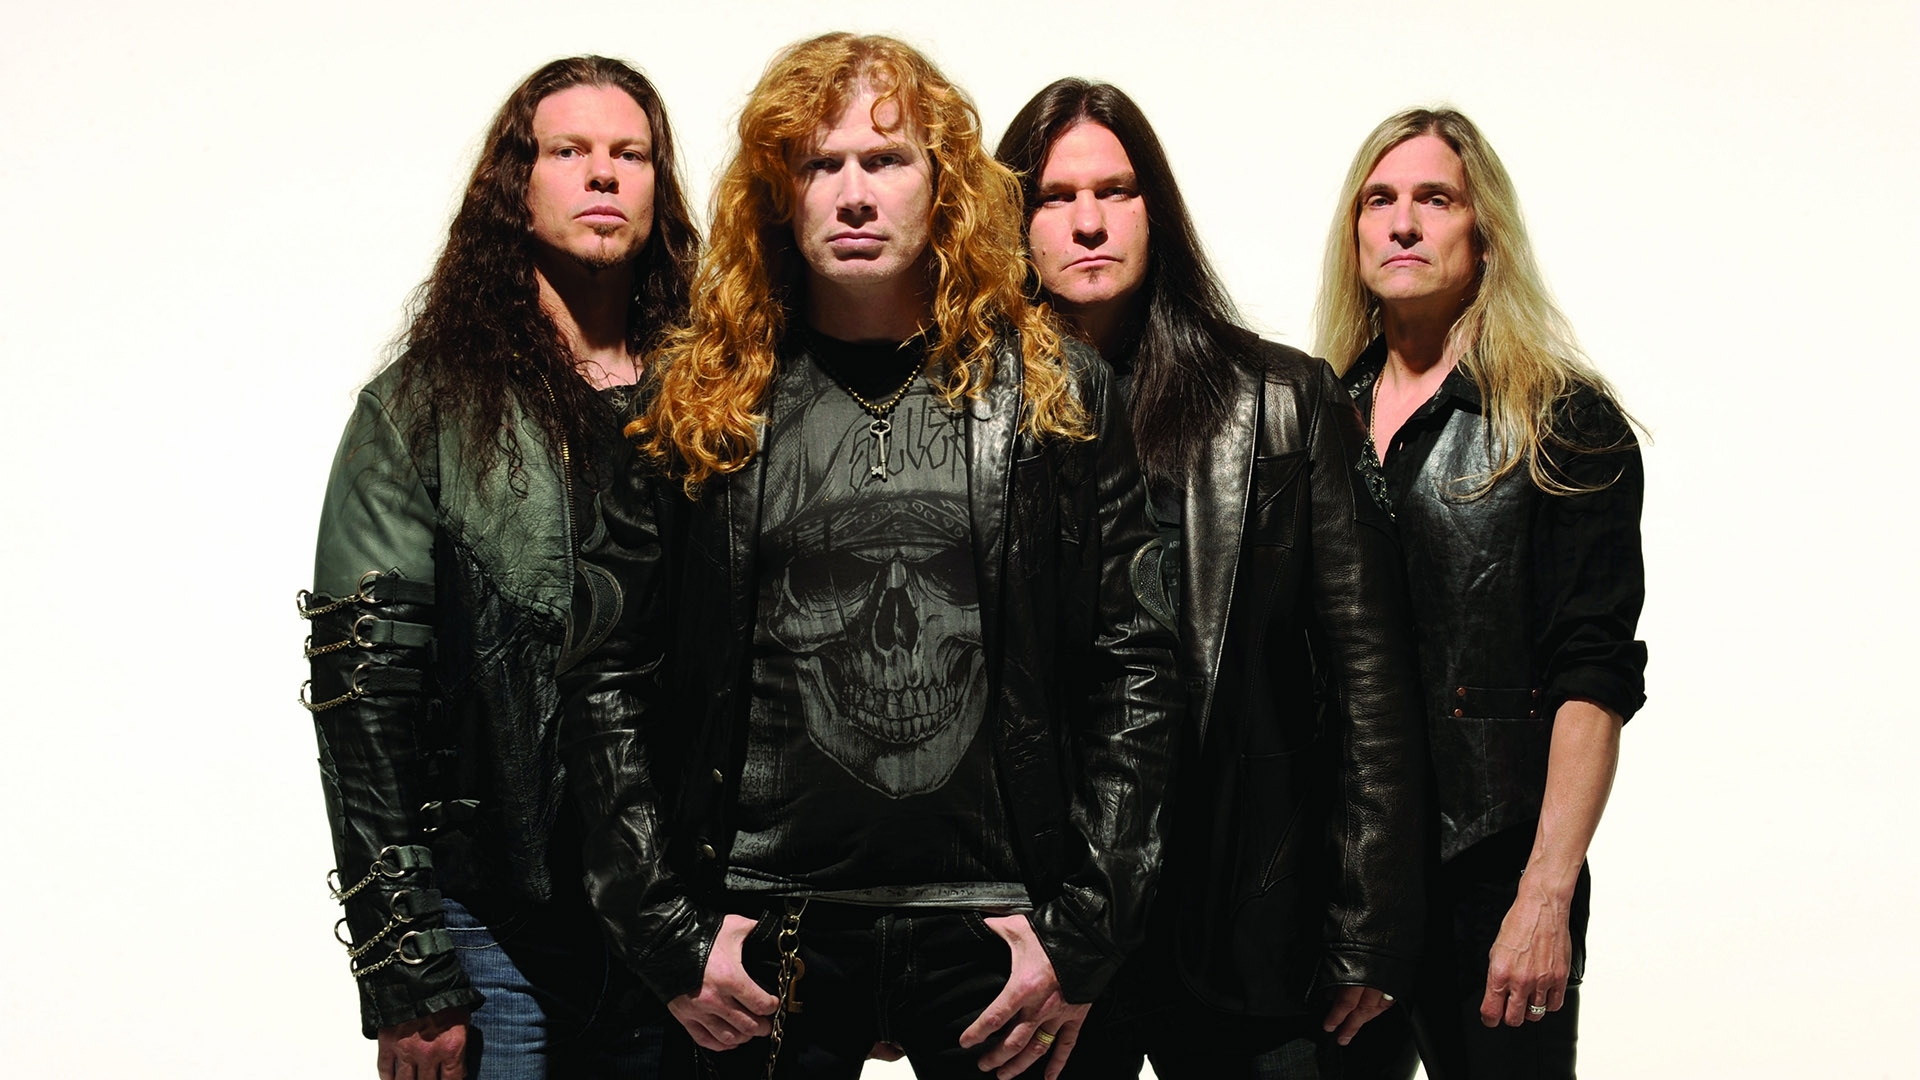 Baixar papel de parede para celular de Megadeth, Música gratuito.